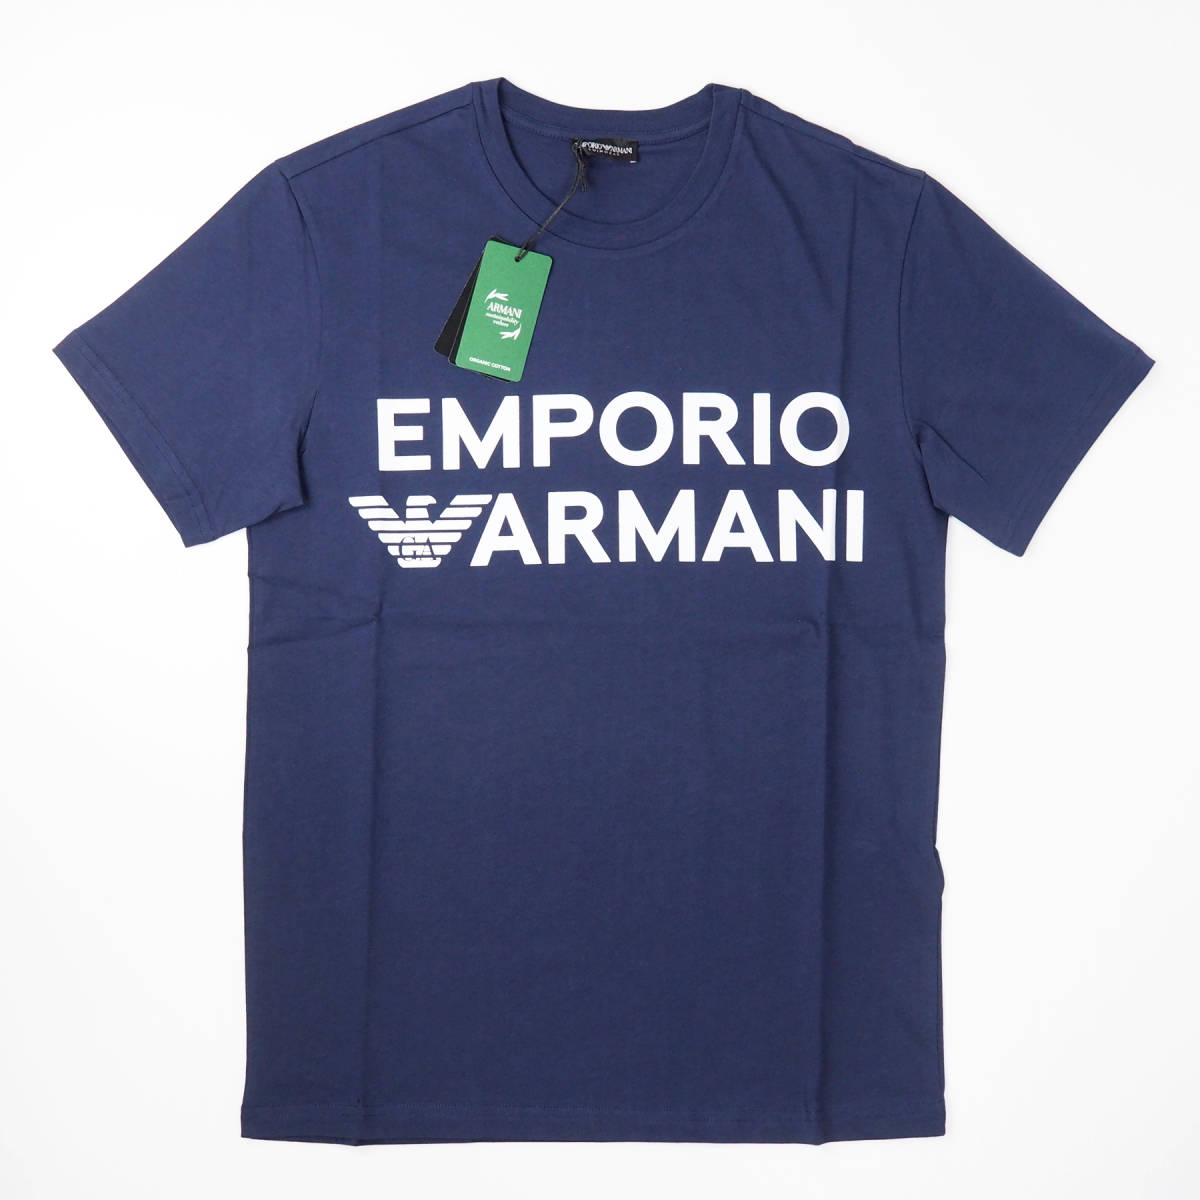 新品正規品 Emporio Armani エンポリオ アルマーニ SWIM 211831 3R479 クルーネック ブランド ロゴ Tシャツ ネイビー S